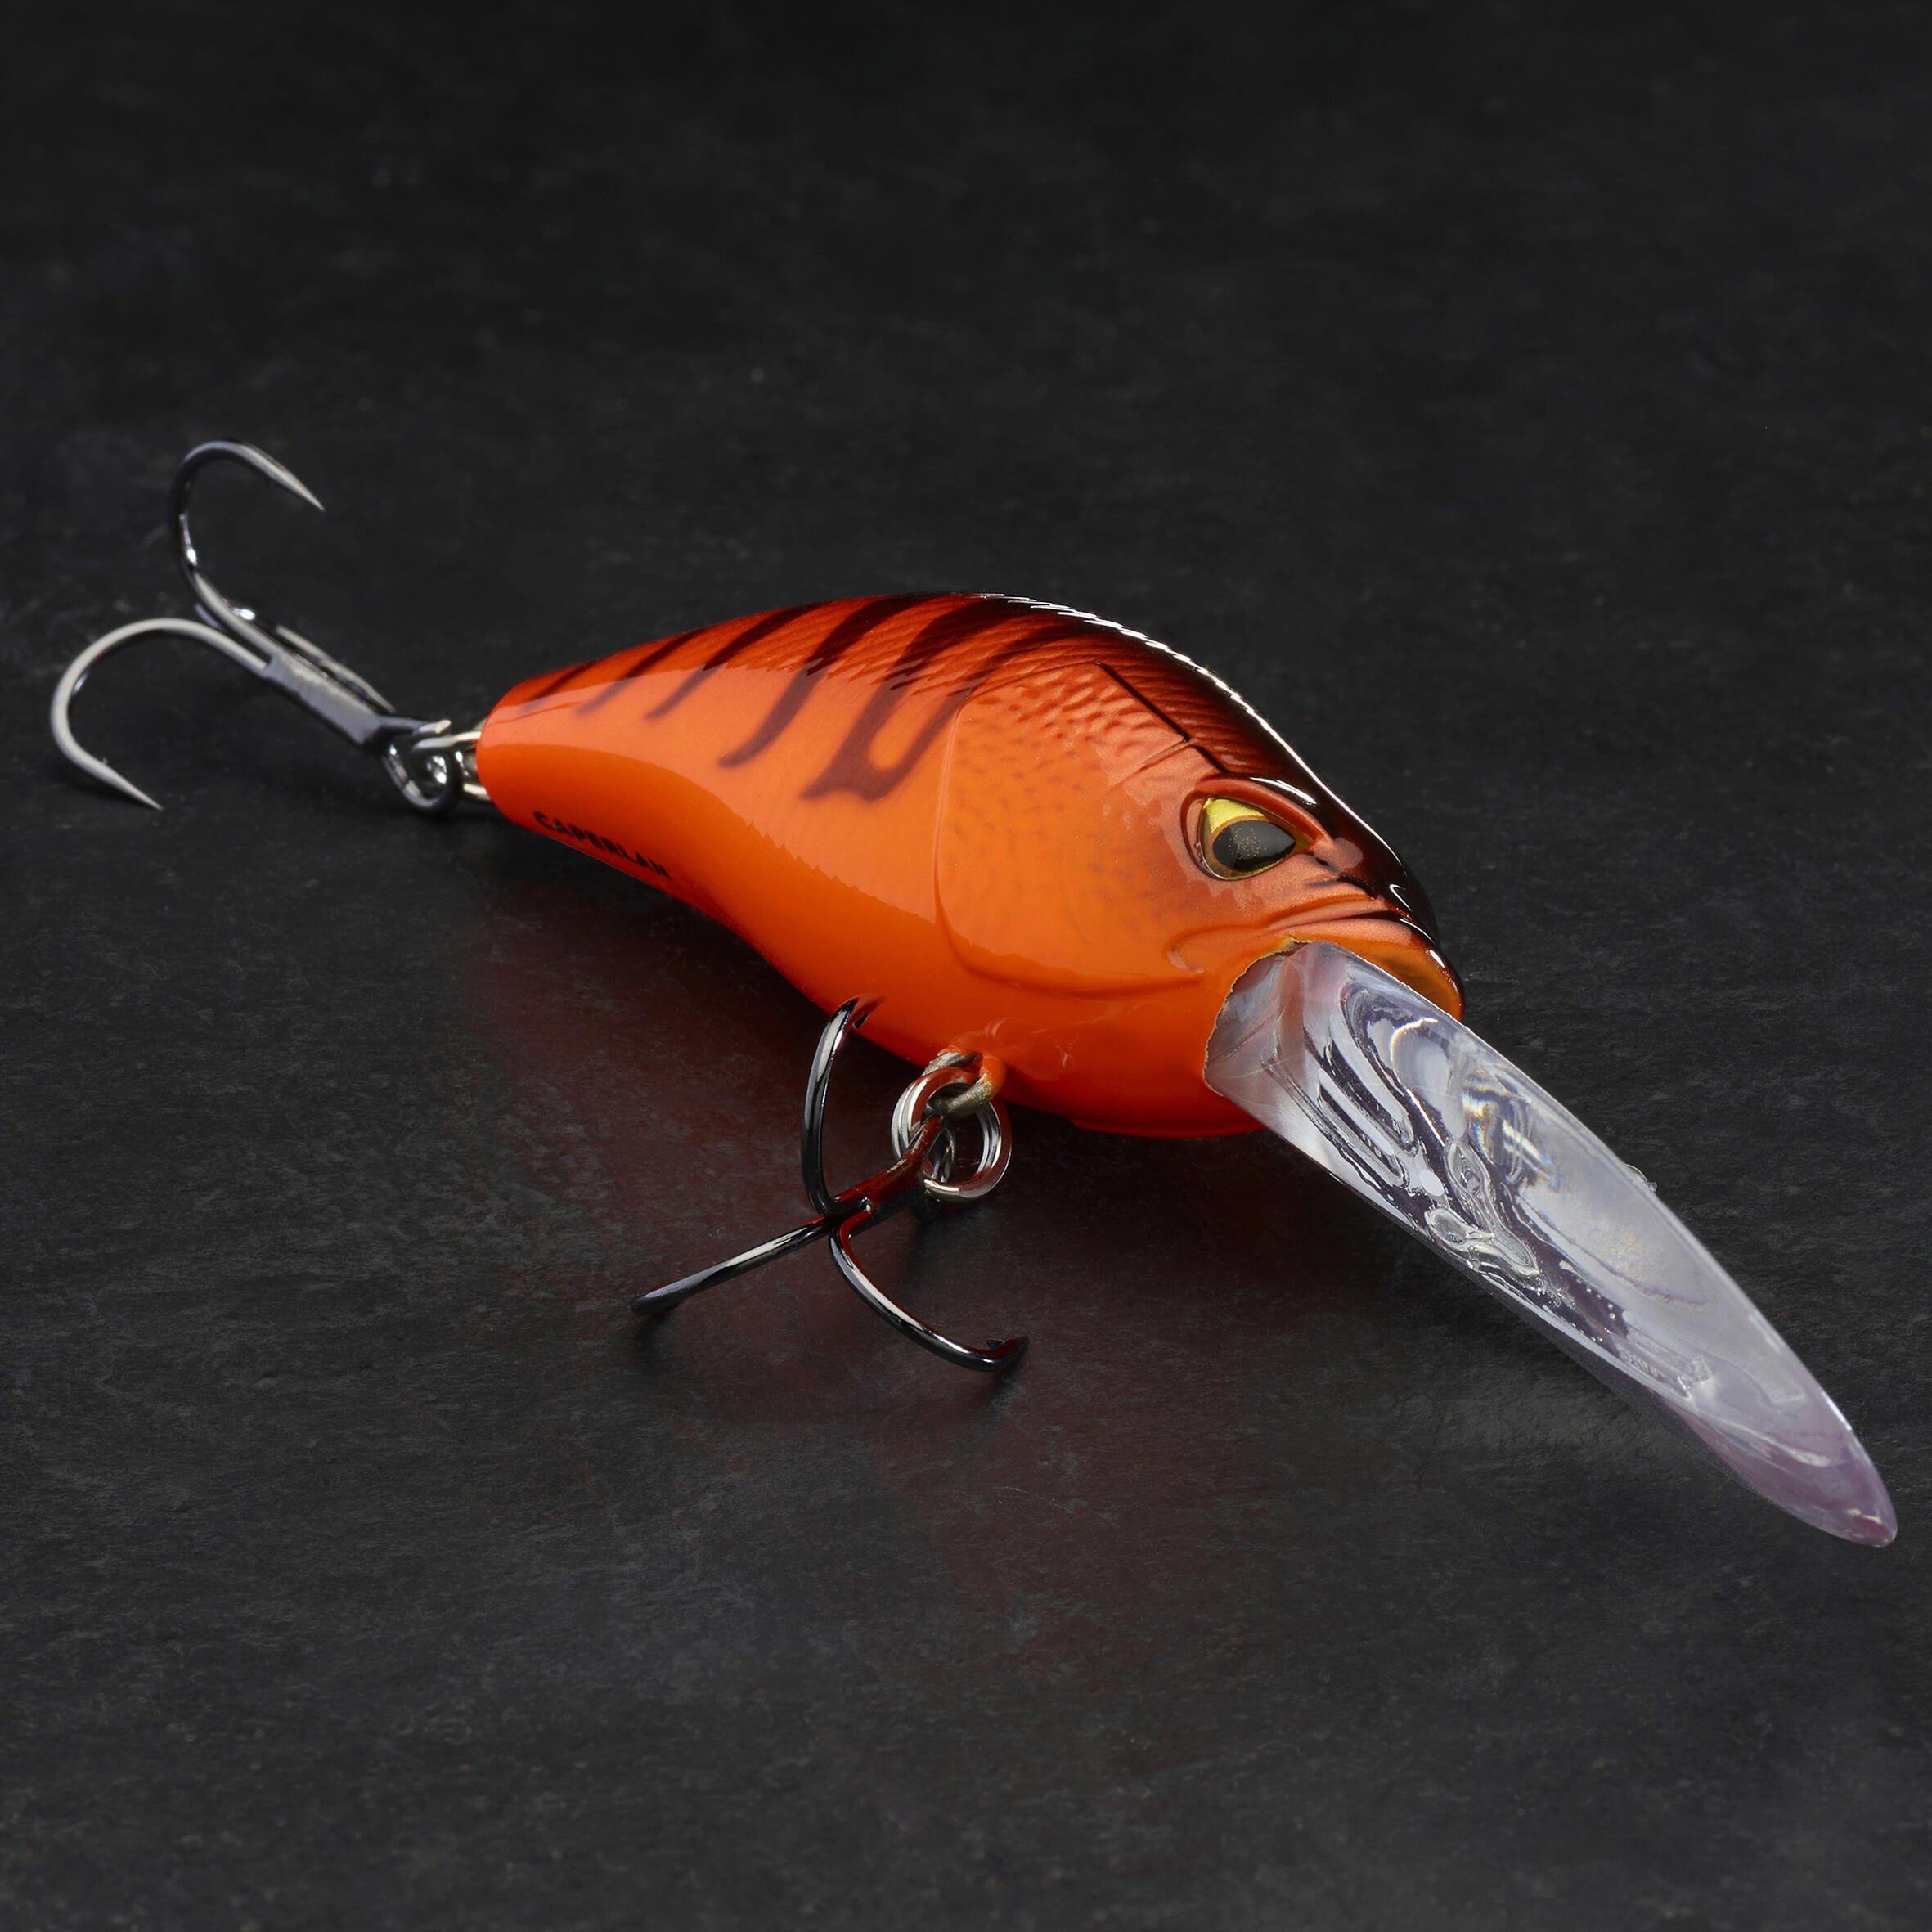 60 lure fishing crankbait - Fluo orange, black - Caperlan - Decathlon